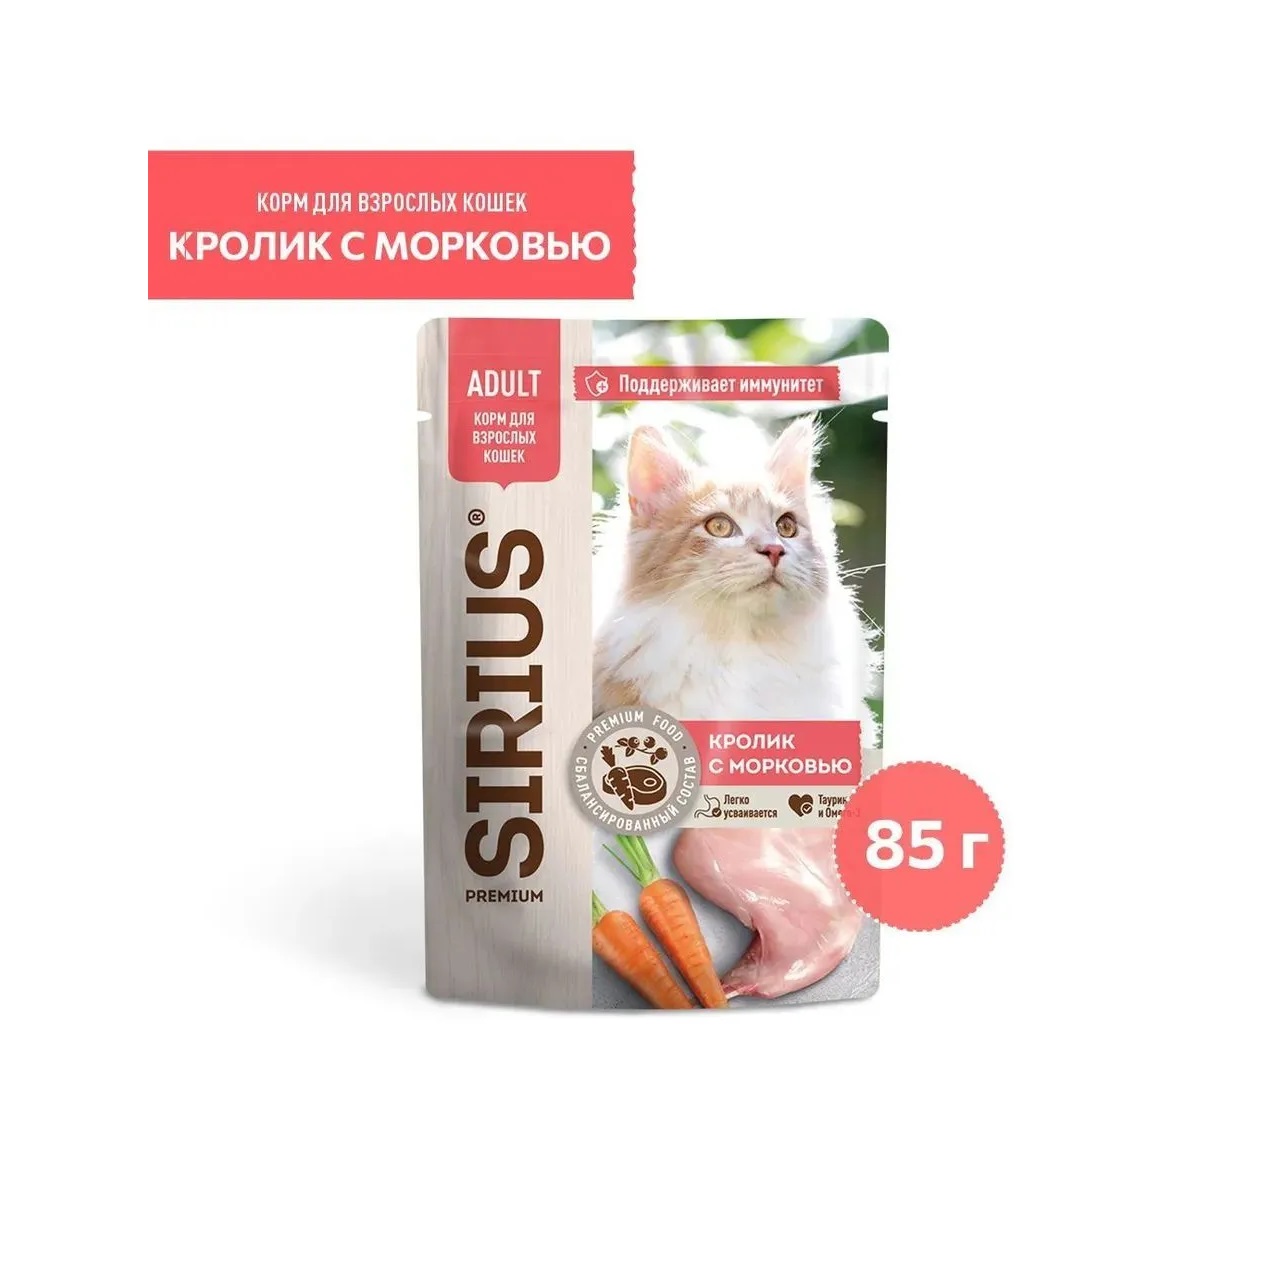 Сириус 85гр - Кролик/Морковь для кошек - Соус (Sirius)